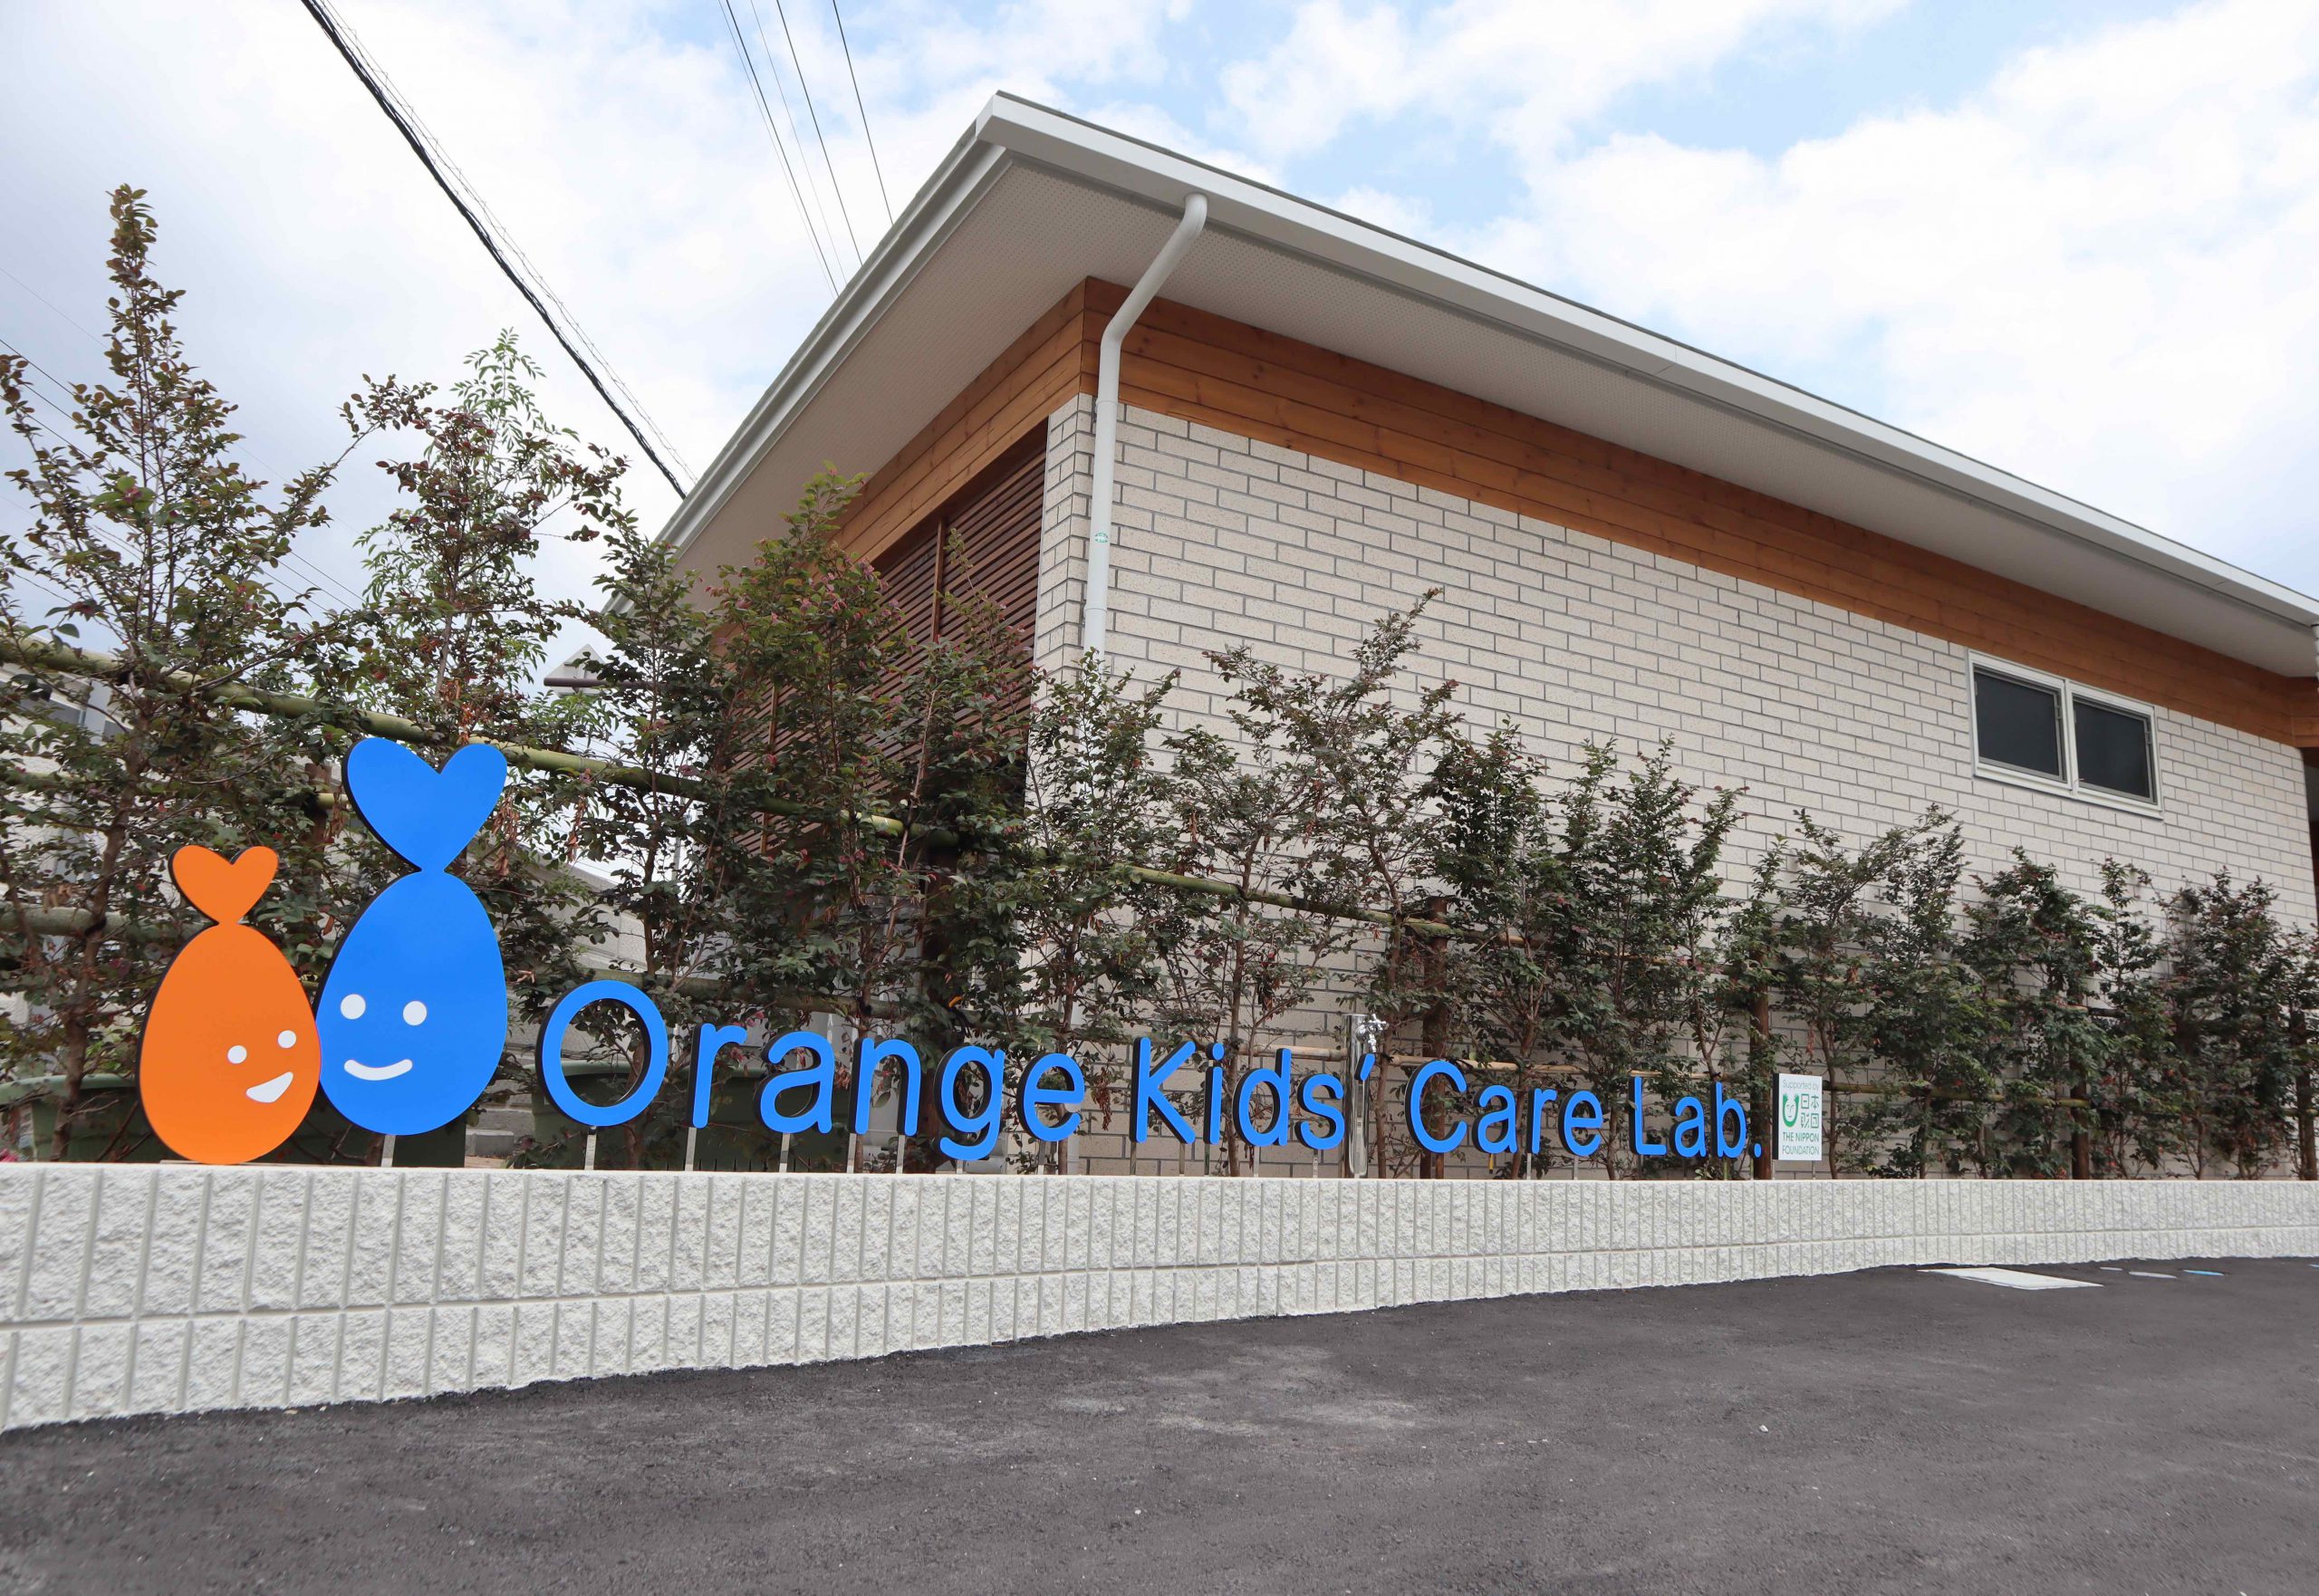 Orange Kids’ Care Lab.